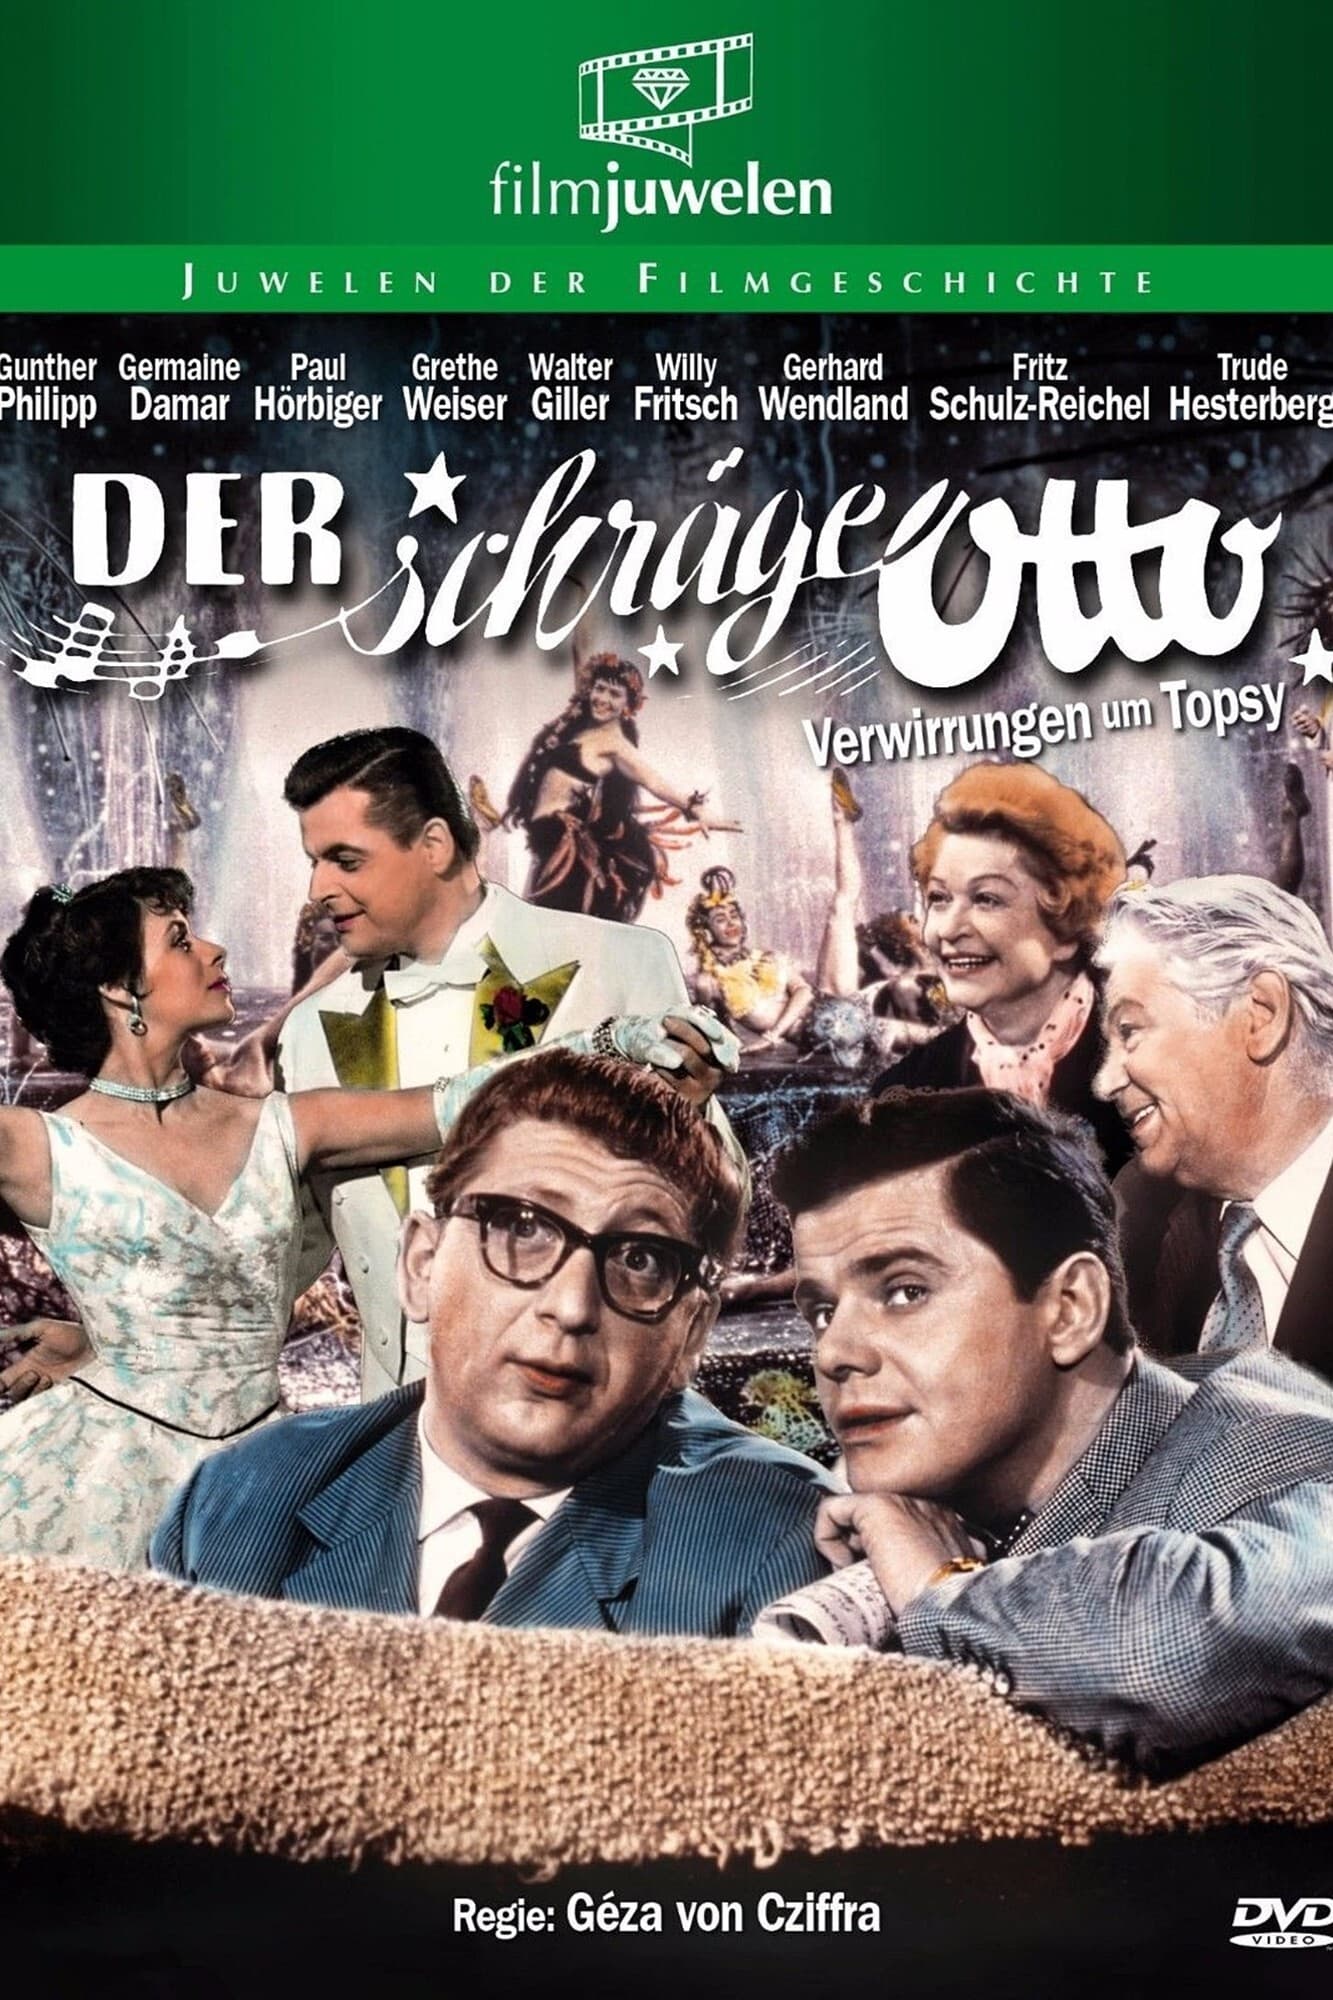 Der schräge Otto (1957)